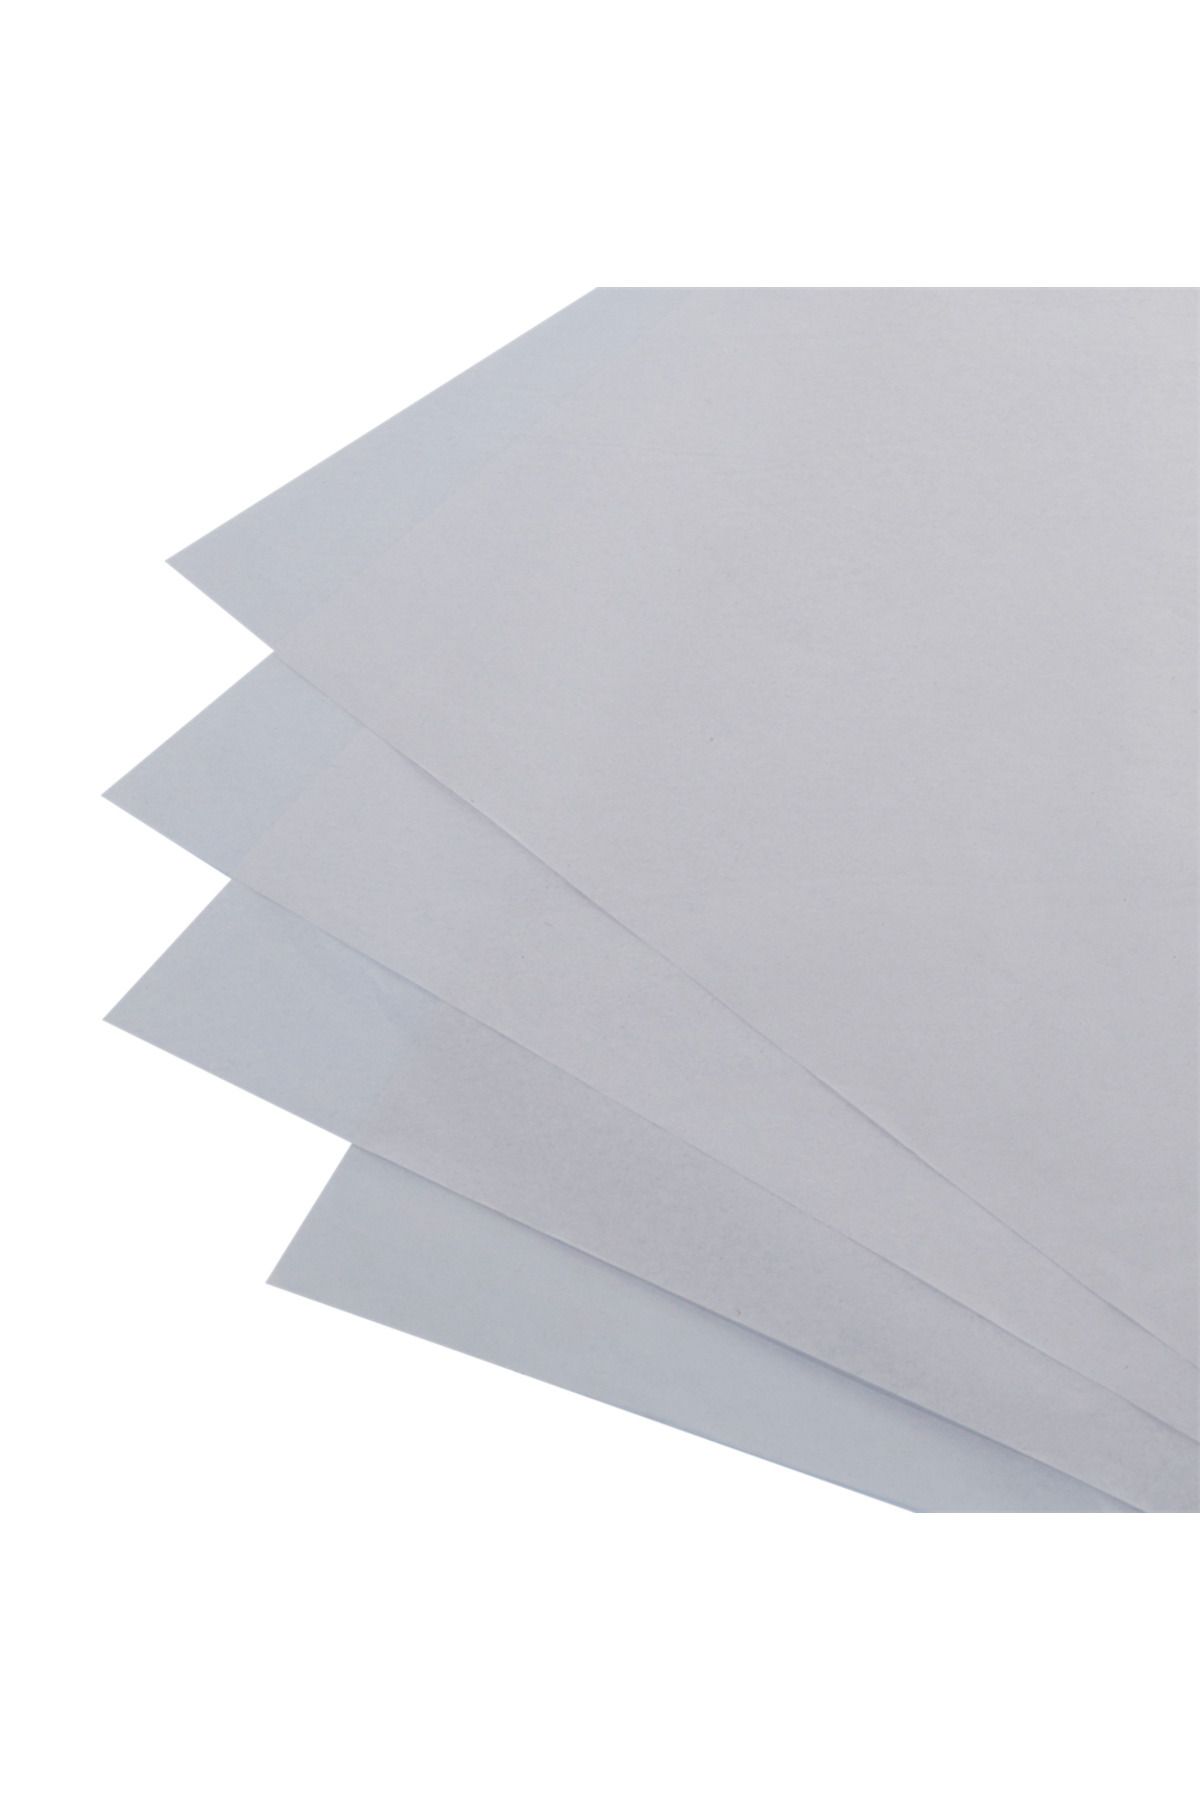 Packanya 50x70-500 Adet 17 Gr. Beyaz Pelur Kağıdı